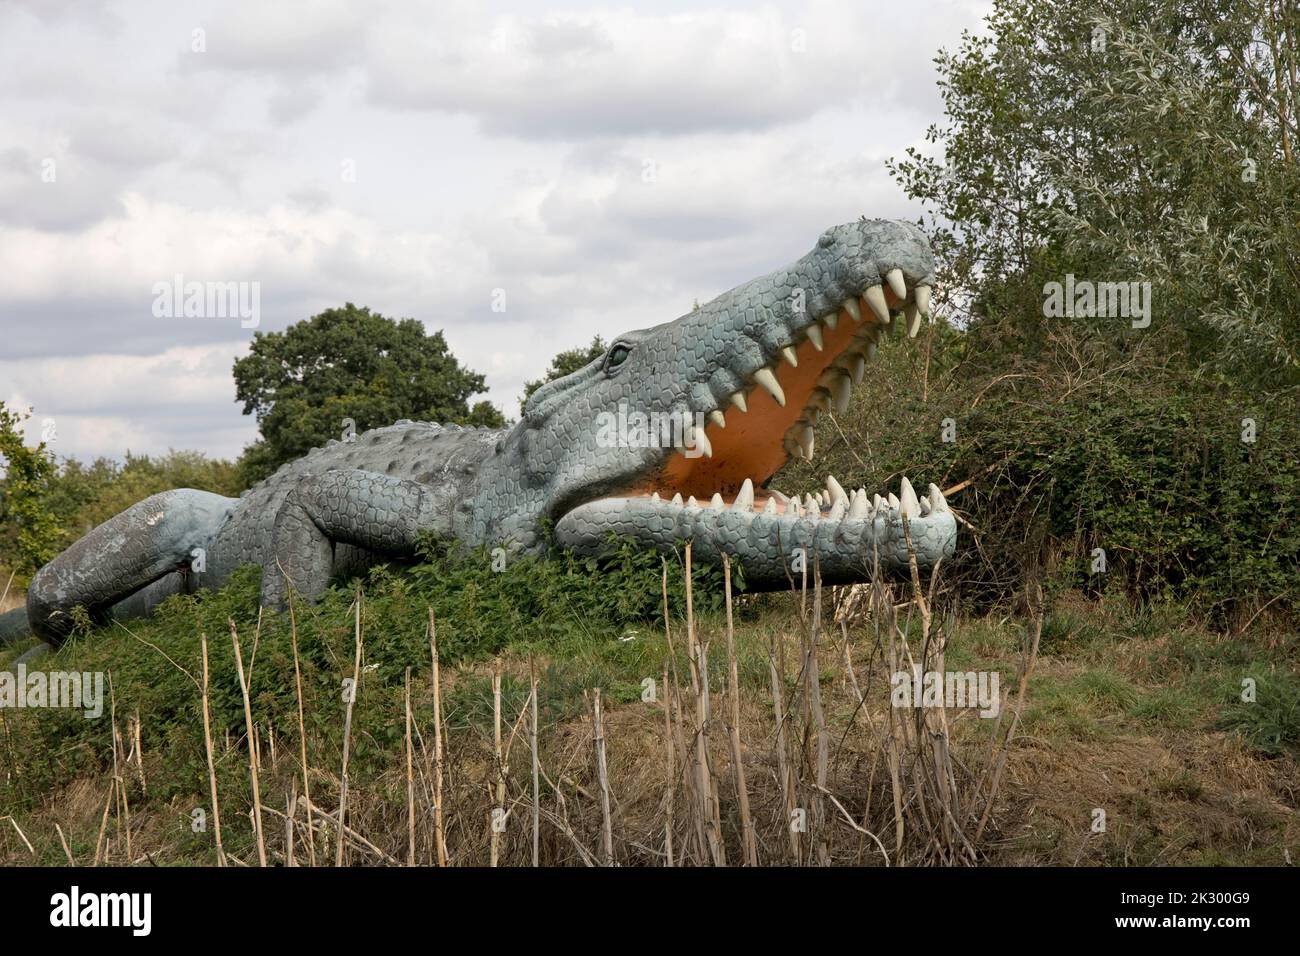 Modèle LifeSize de Deinosuchus dinosaure un genre éteint d'un crocodilien alligatoroïde All Things Wild, Honeybourne, Royaume-Uni Banque D'Images